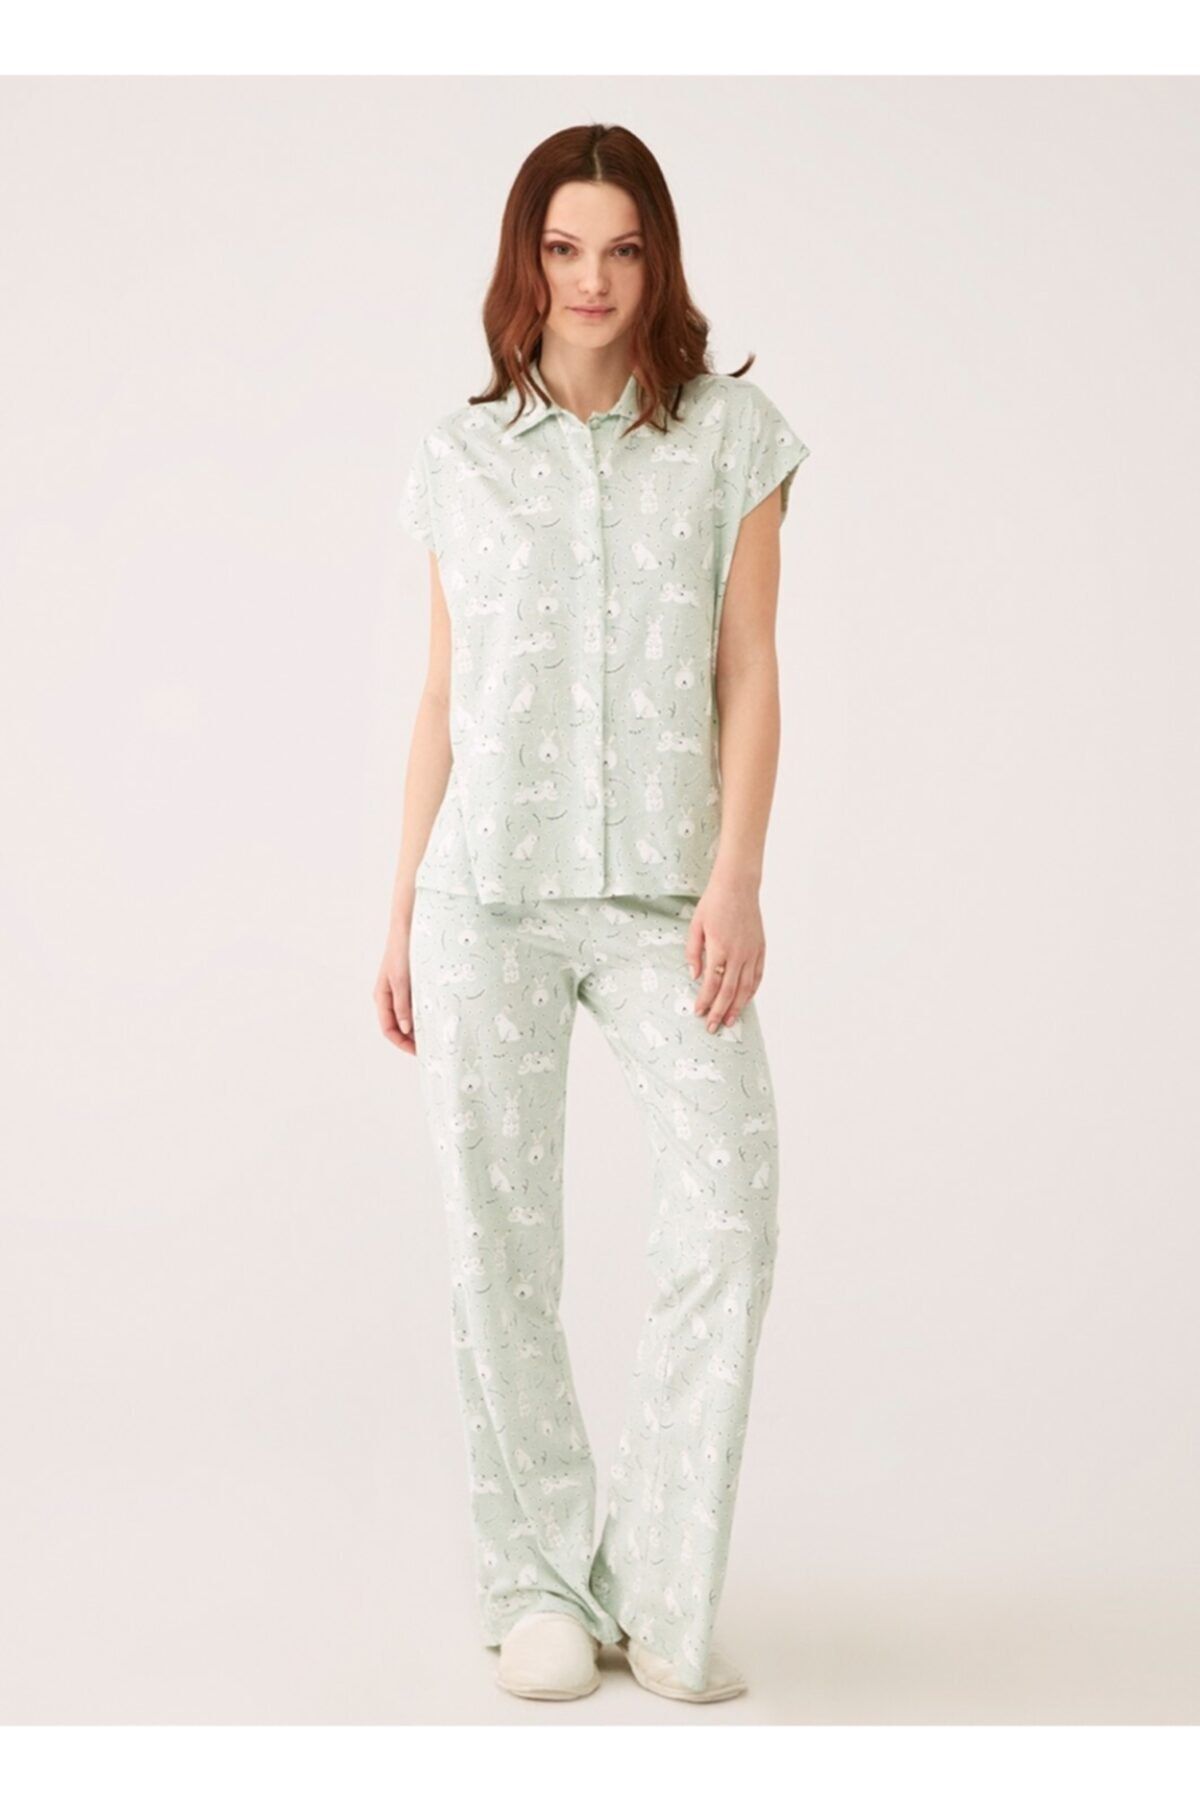 Dagi Yeşil Melanj Tavşan Baskılı Modal Empirme Kumaş Gömlek Kadın Kısa Kol Pijama Takımı